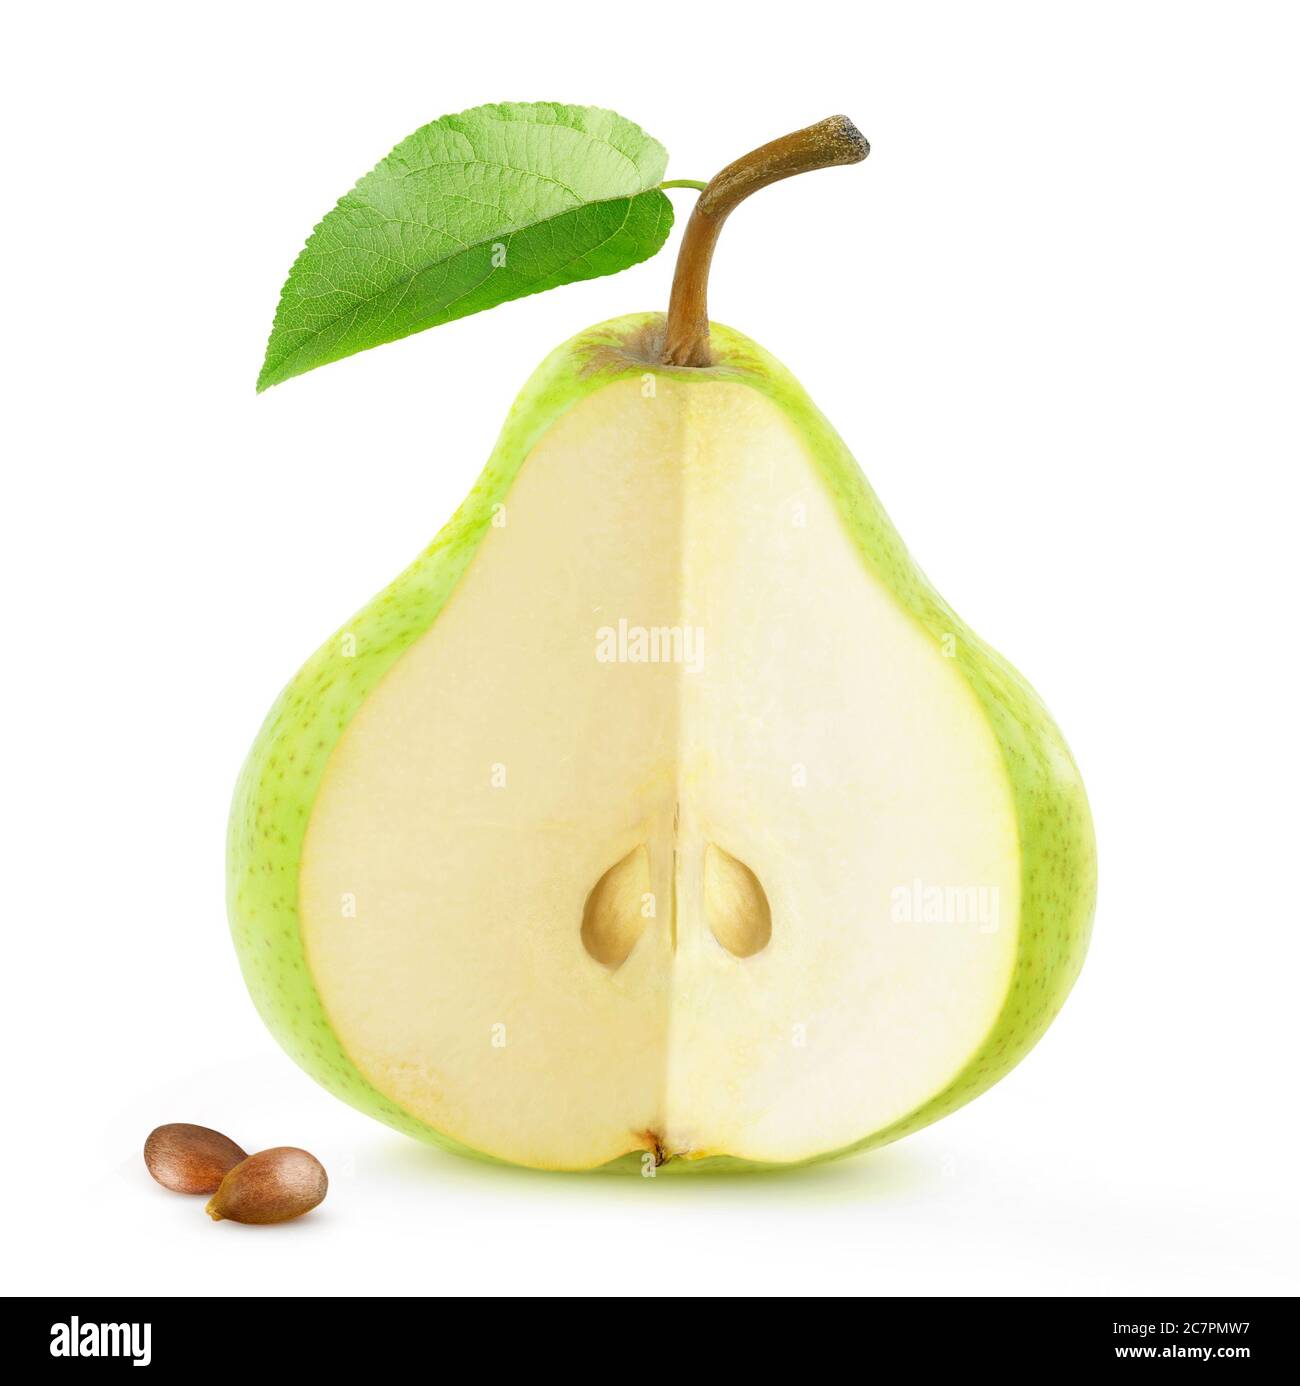 Isolierte Birnenfrucht. Eine grüne Birne mit Ausschnitt und Samen isoliert auf weißem Hintergrund Stockfoto